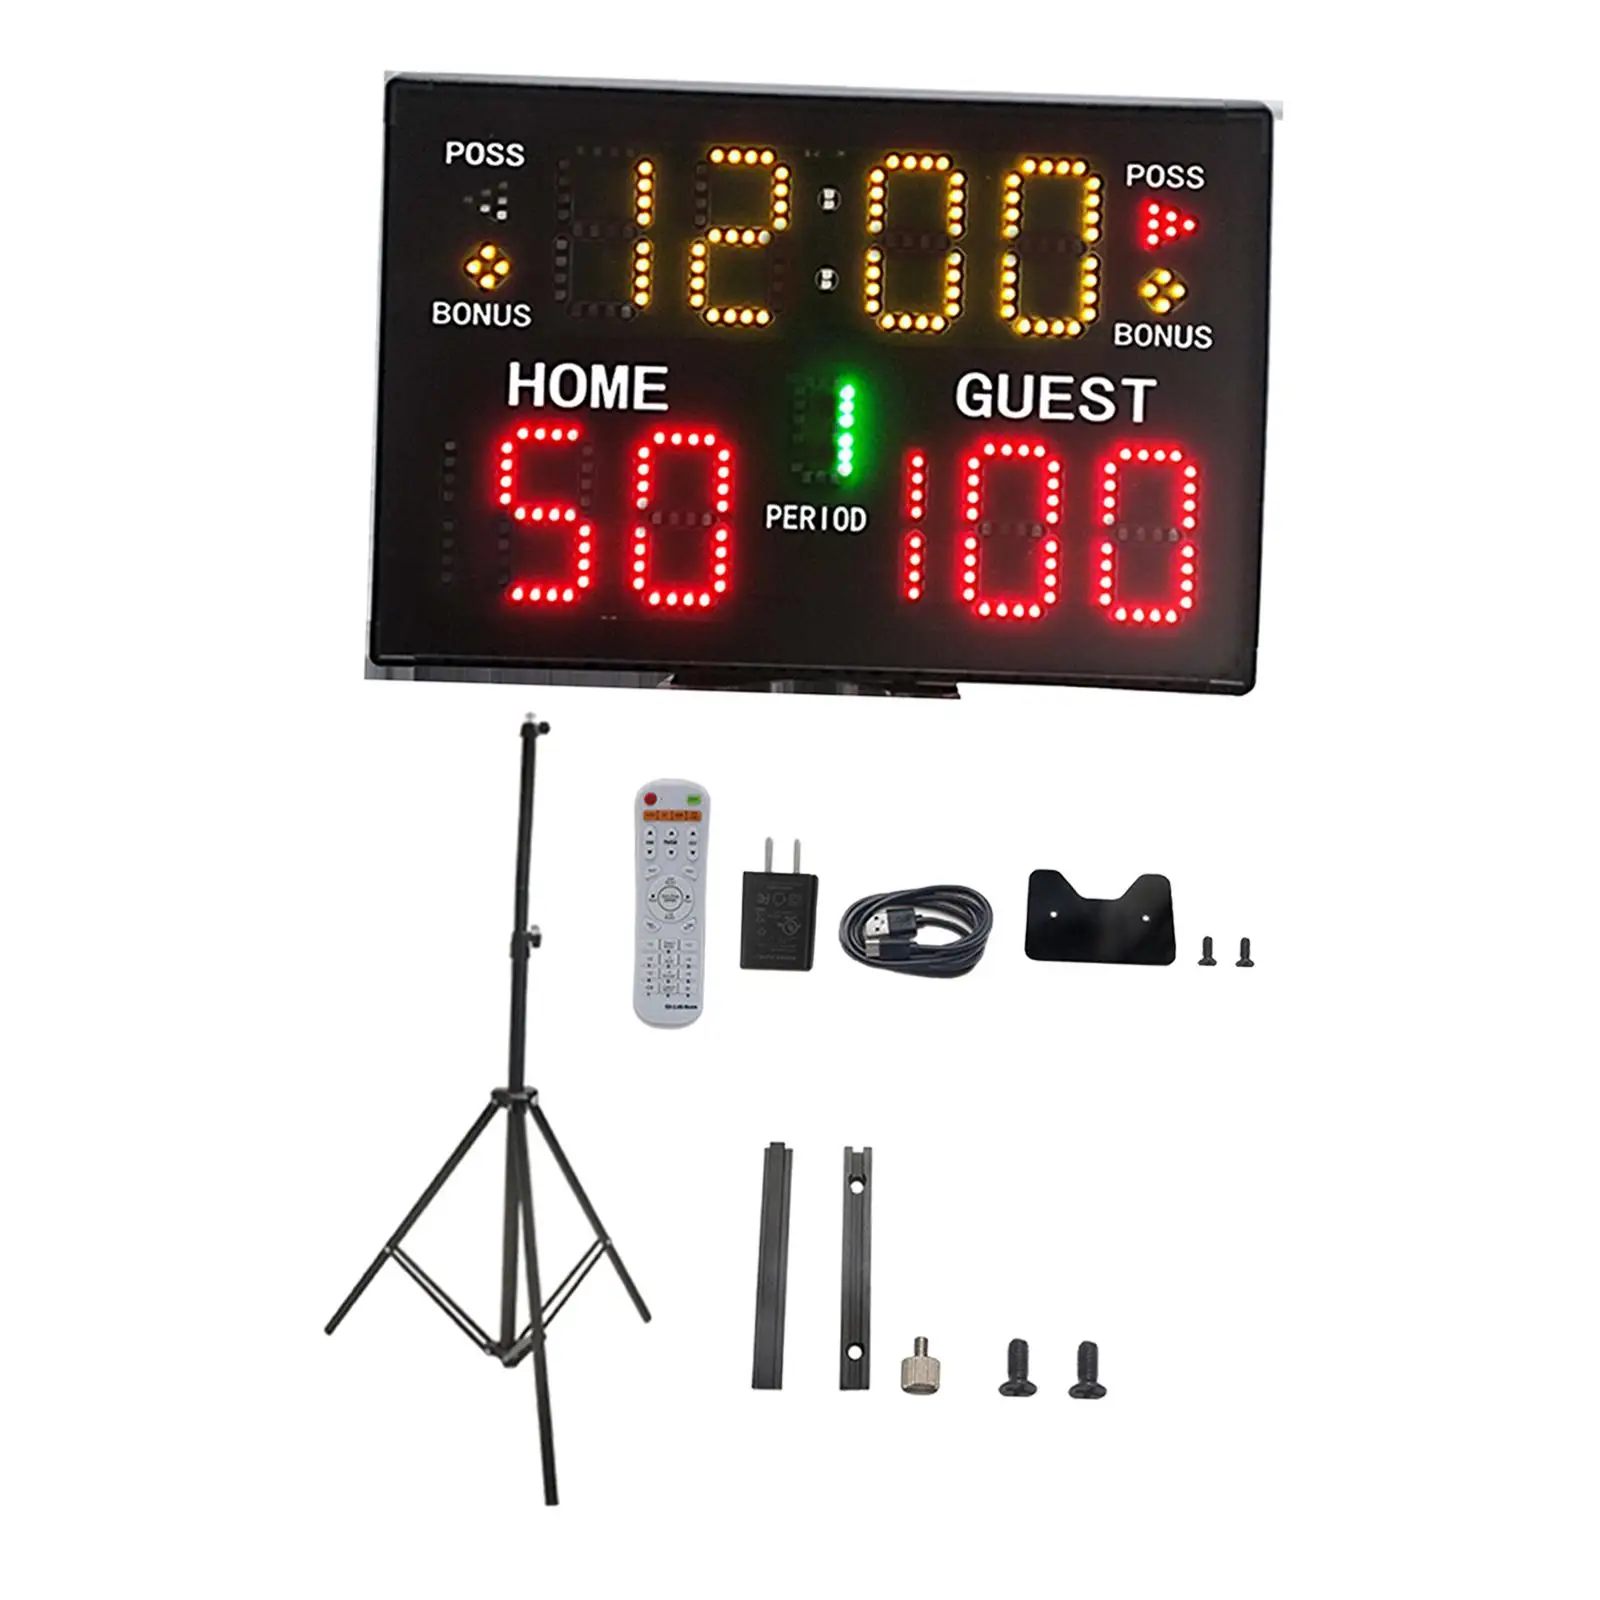 Digital Scoreboard Score Keeper Electronic Scoreboard for Volleyball Tennis